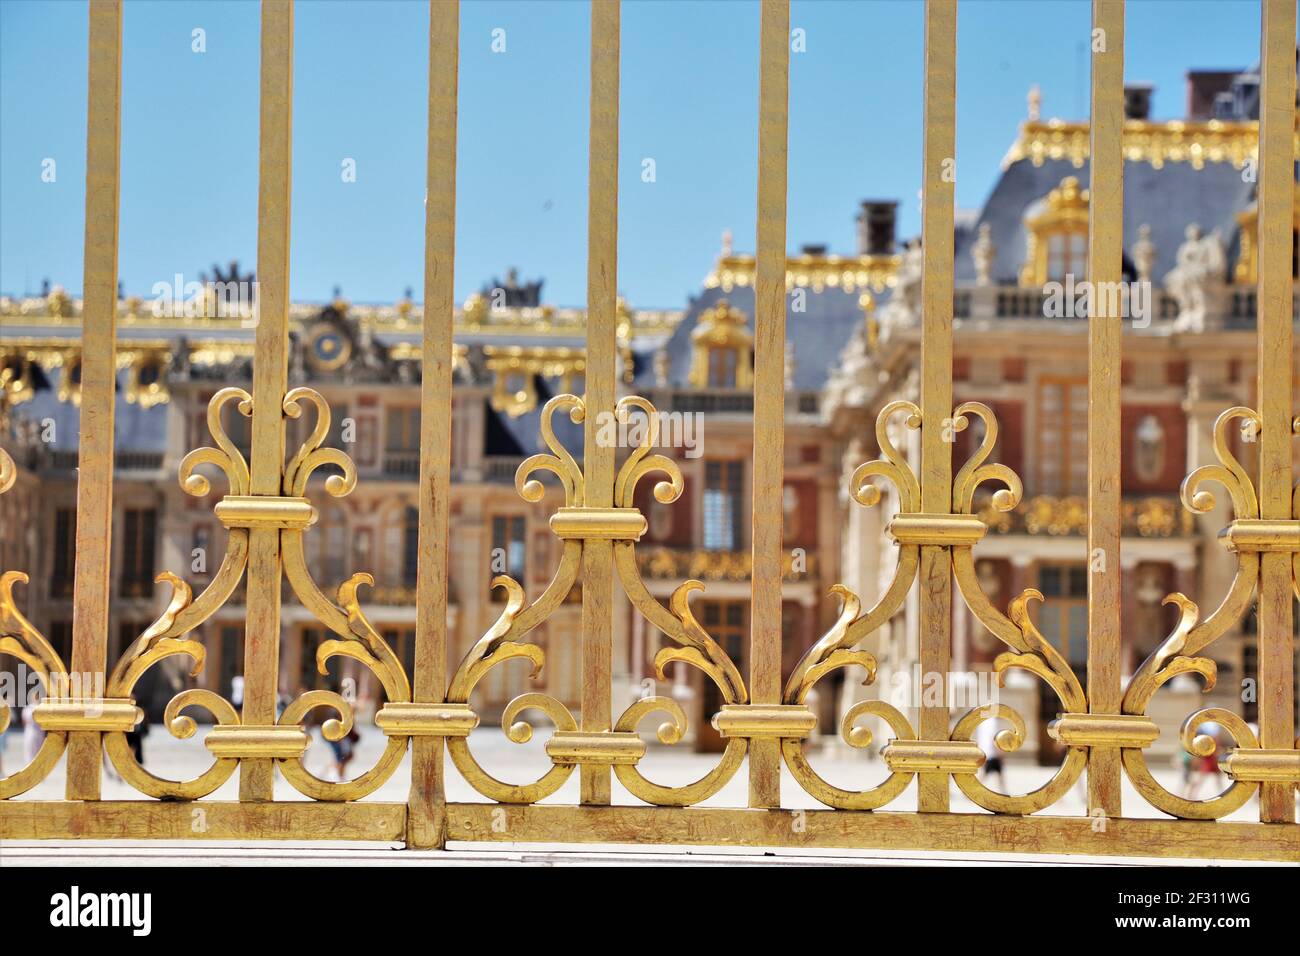 L'or date du château de Versailles, France Banque D'Images